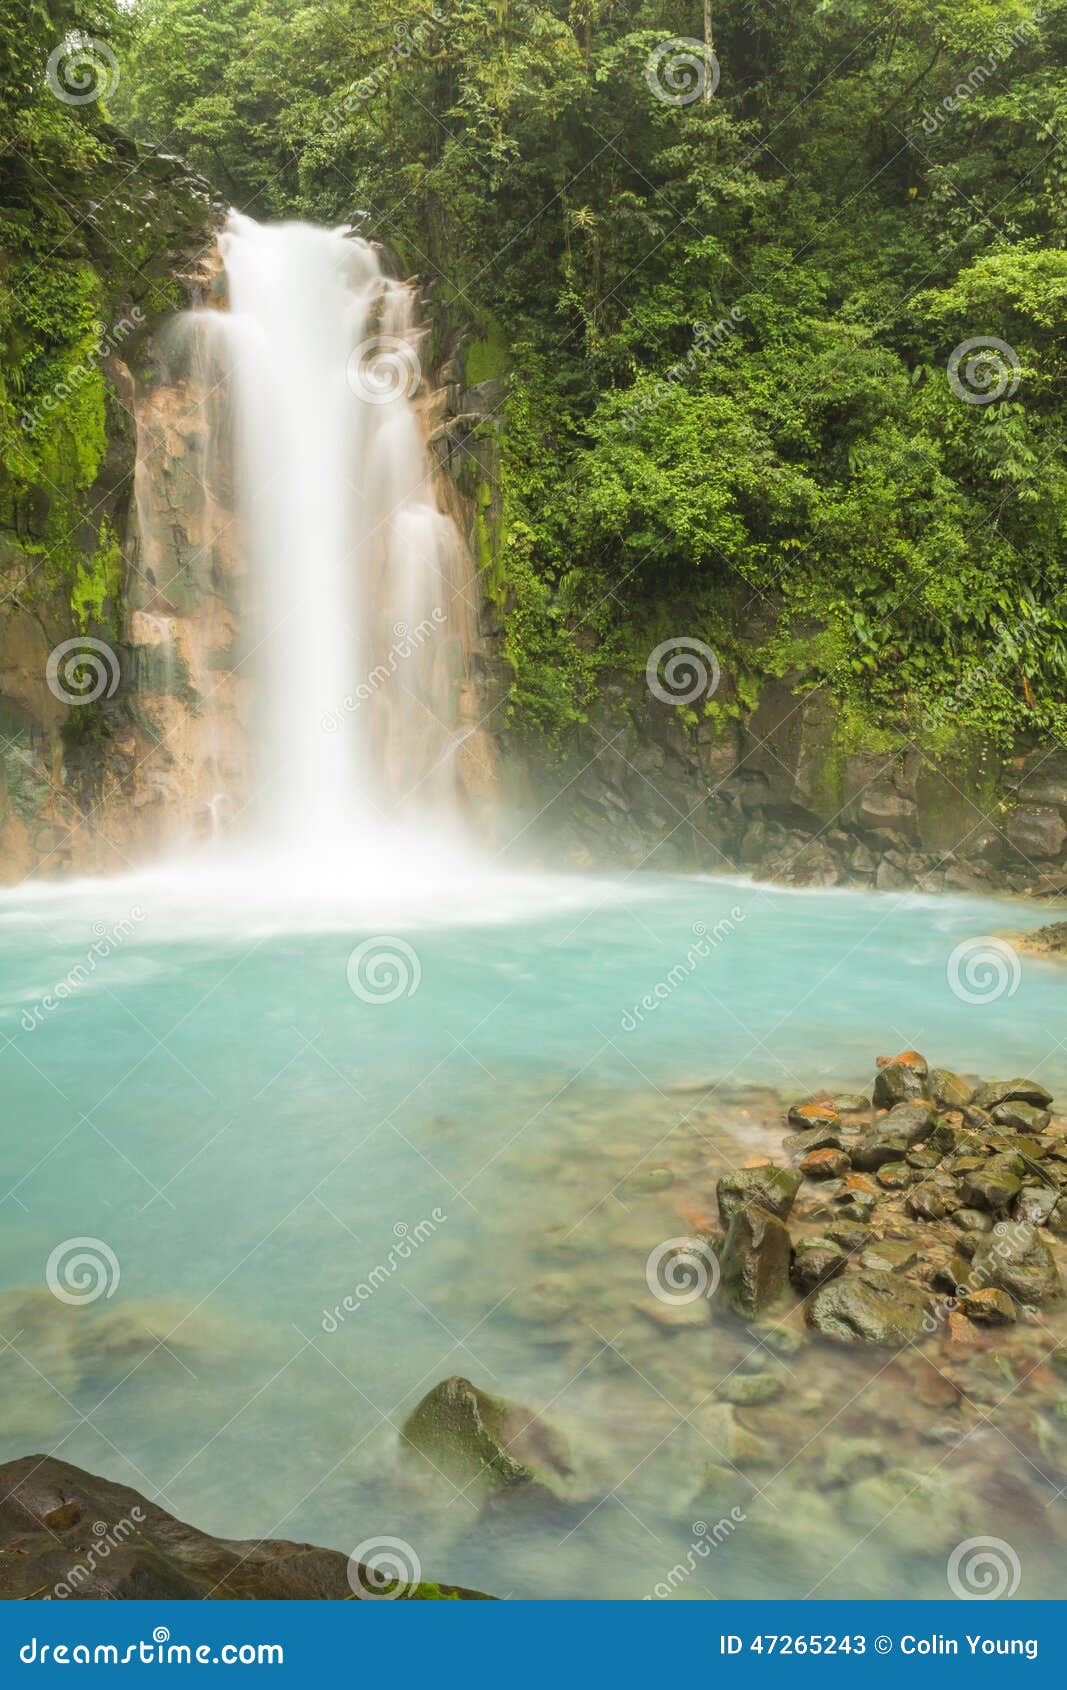 rio celeste waterfall and sulphurous rocks